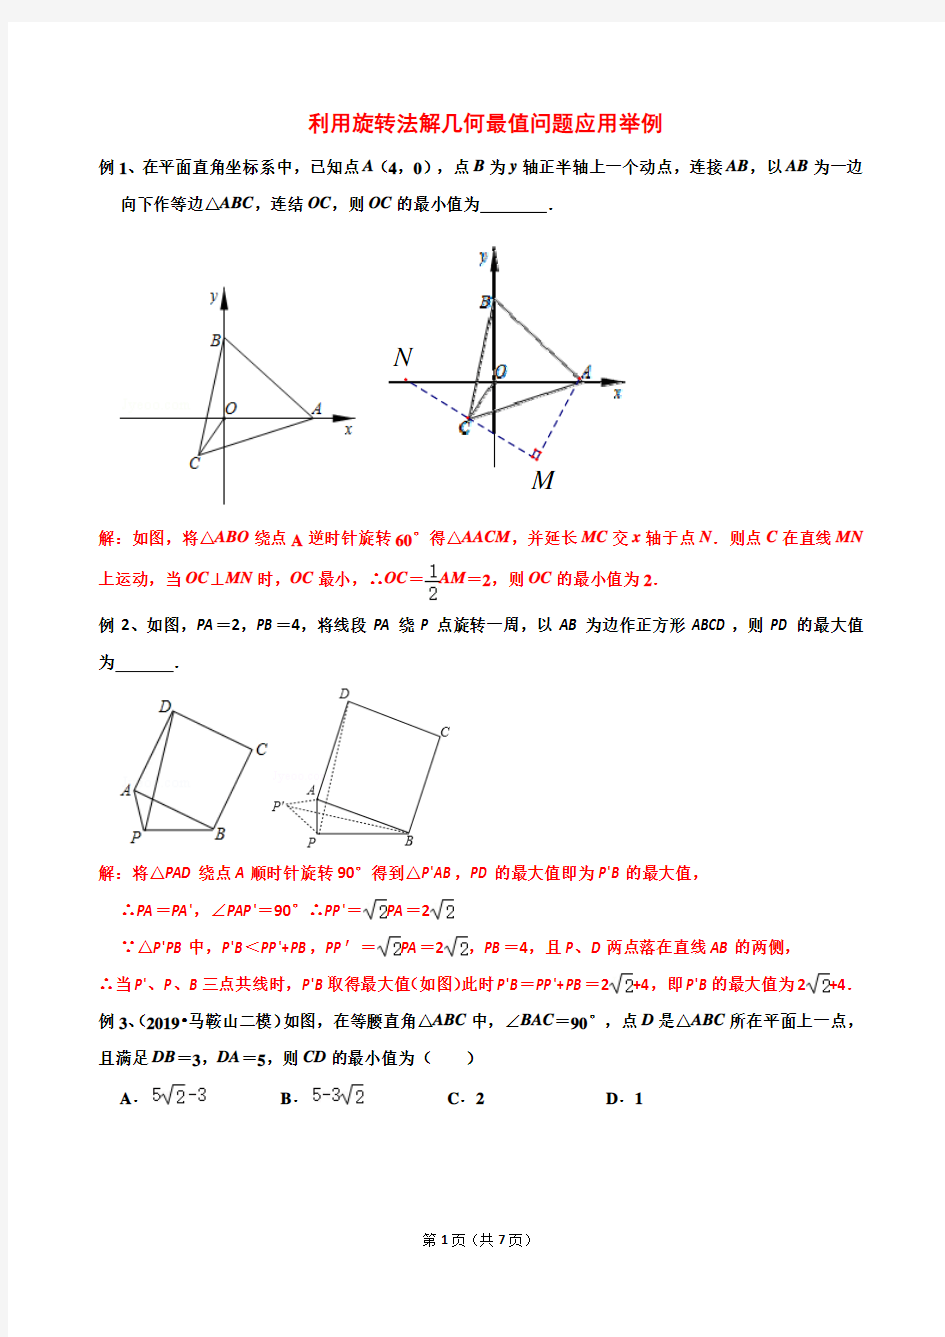 2020重庆中考复习利用旋转法解几何最值问题应用举例